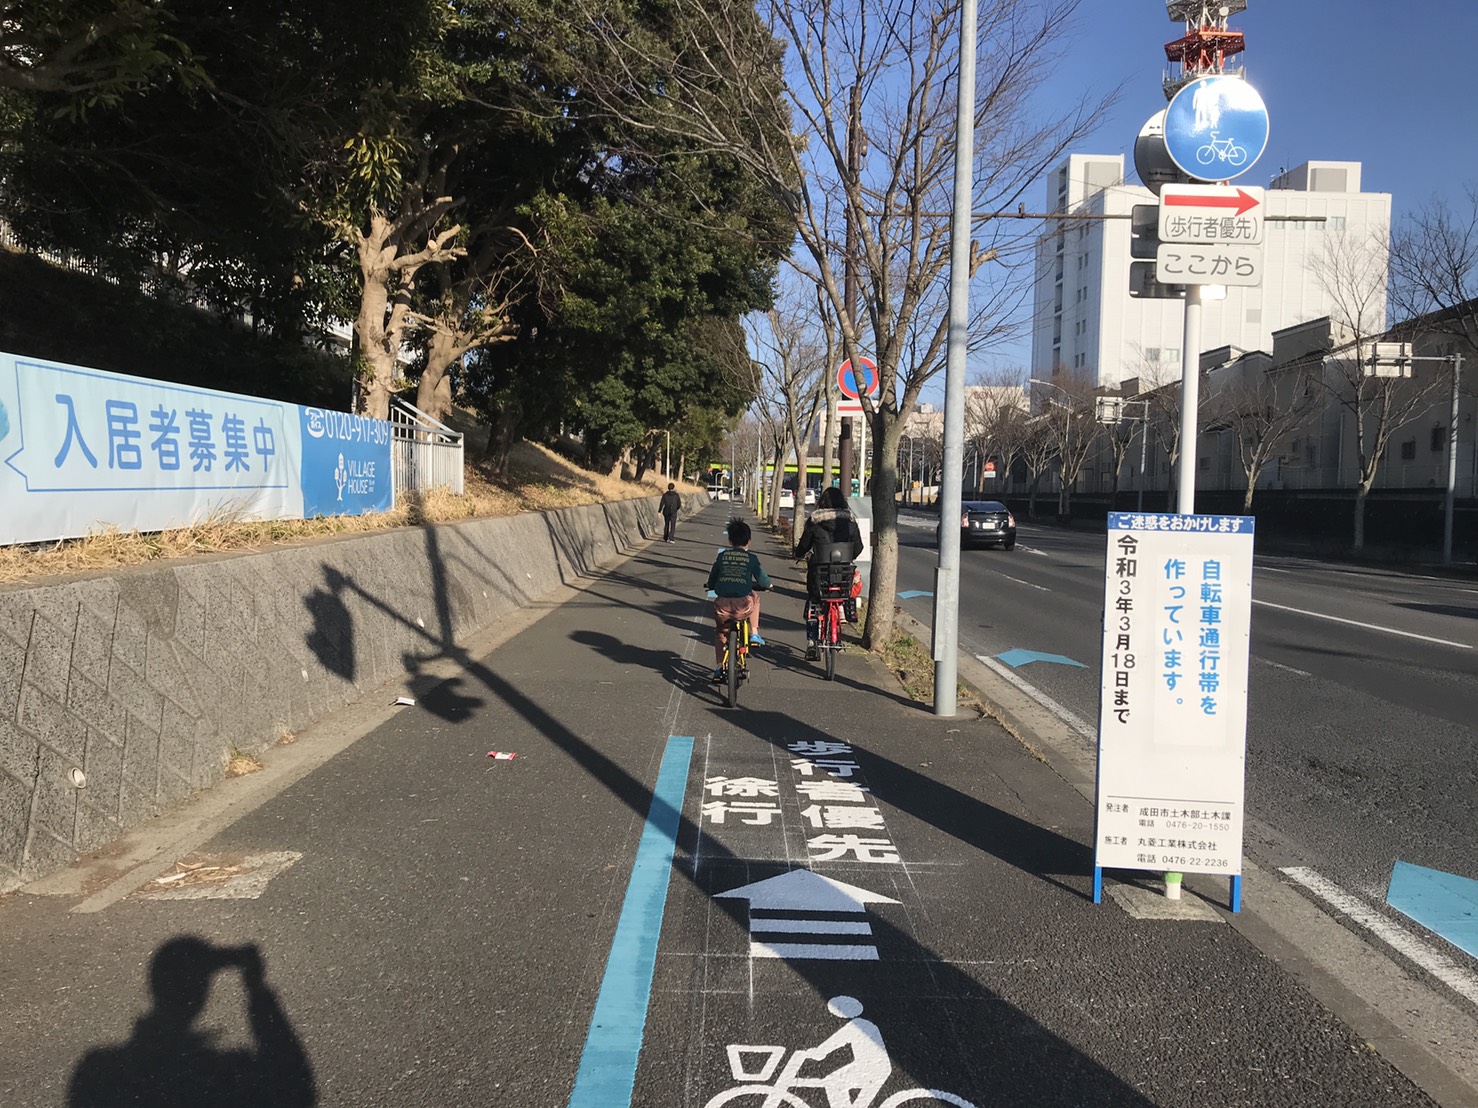 自転車通行帯 自転車ナビライン の整備が行われています 成田市議会議員 雨宮しんご